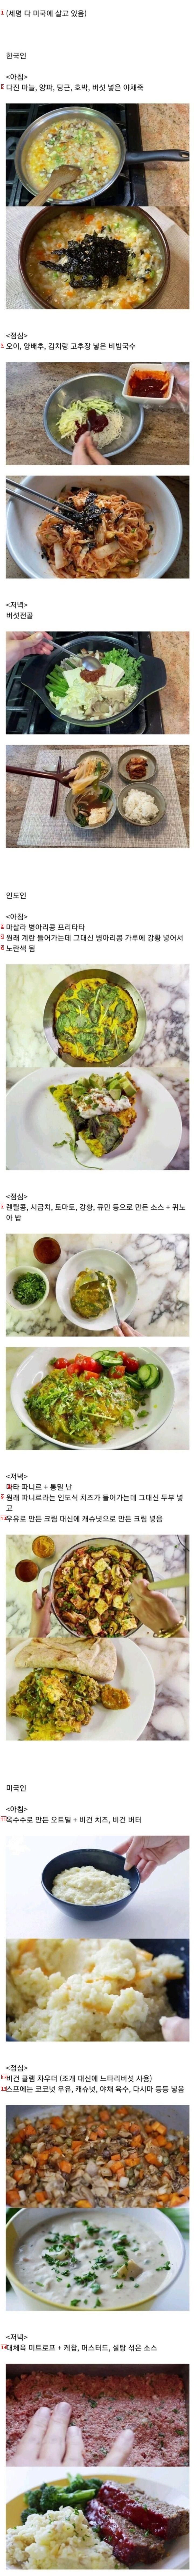 韓国、インド、アメリカ人ベジタリアンの1日の食事